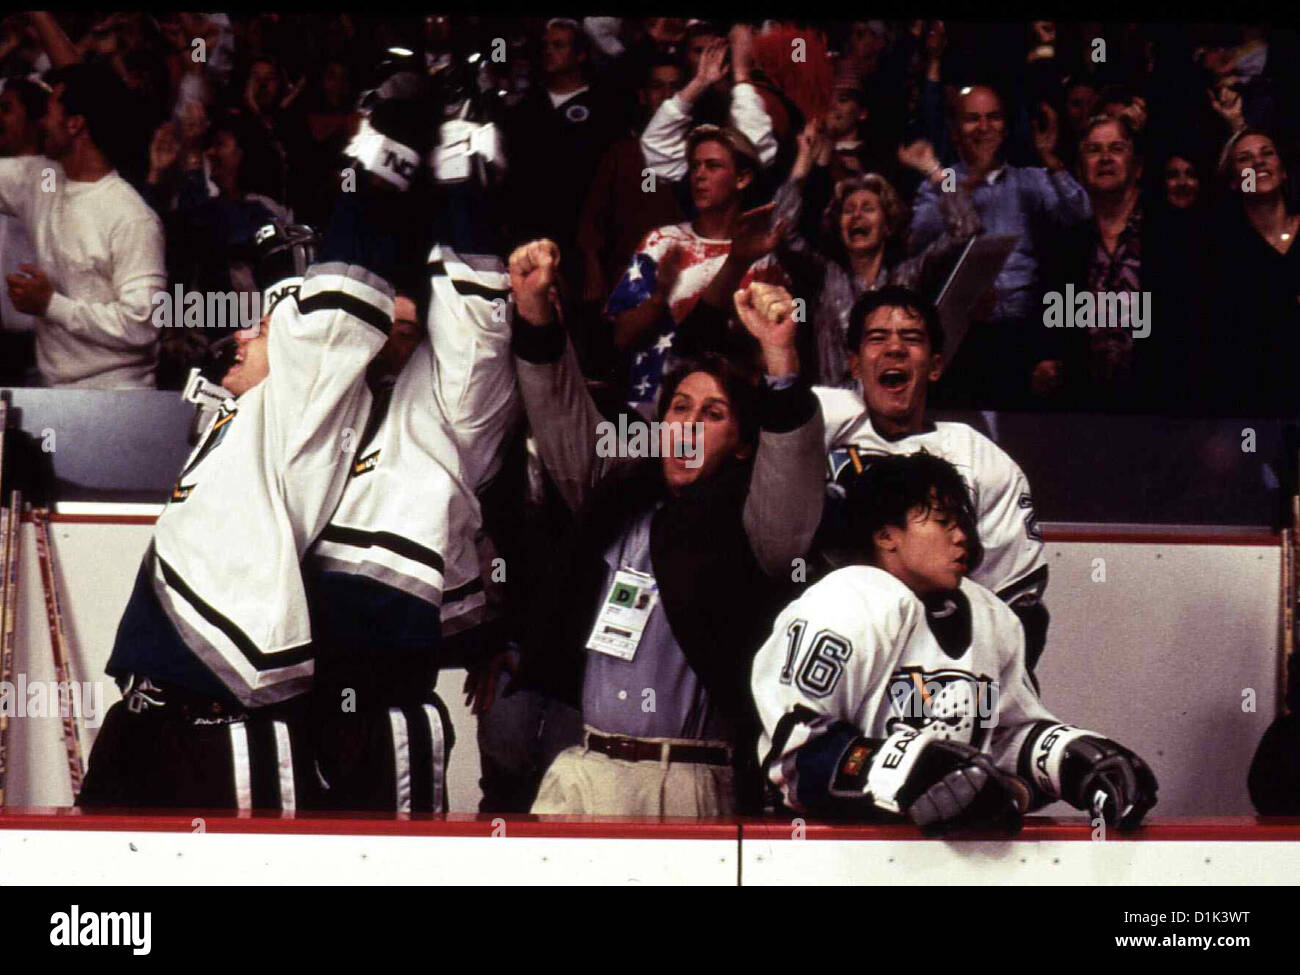 Mighty Ducks Ii - Das Superteam Kehrt Zurueck D2: Mighty Ducks Emilio Estevez Gordon Bombay (Emilio Estevez,m) jubelt mit den Foto Stock